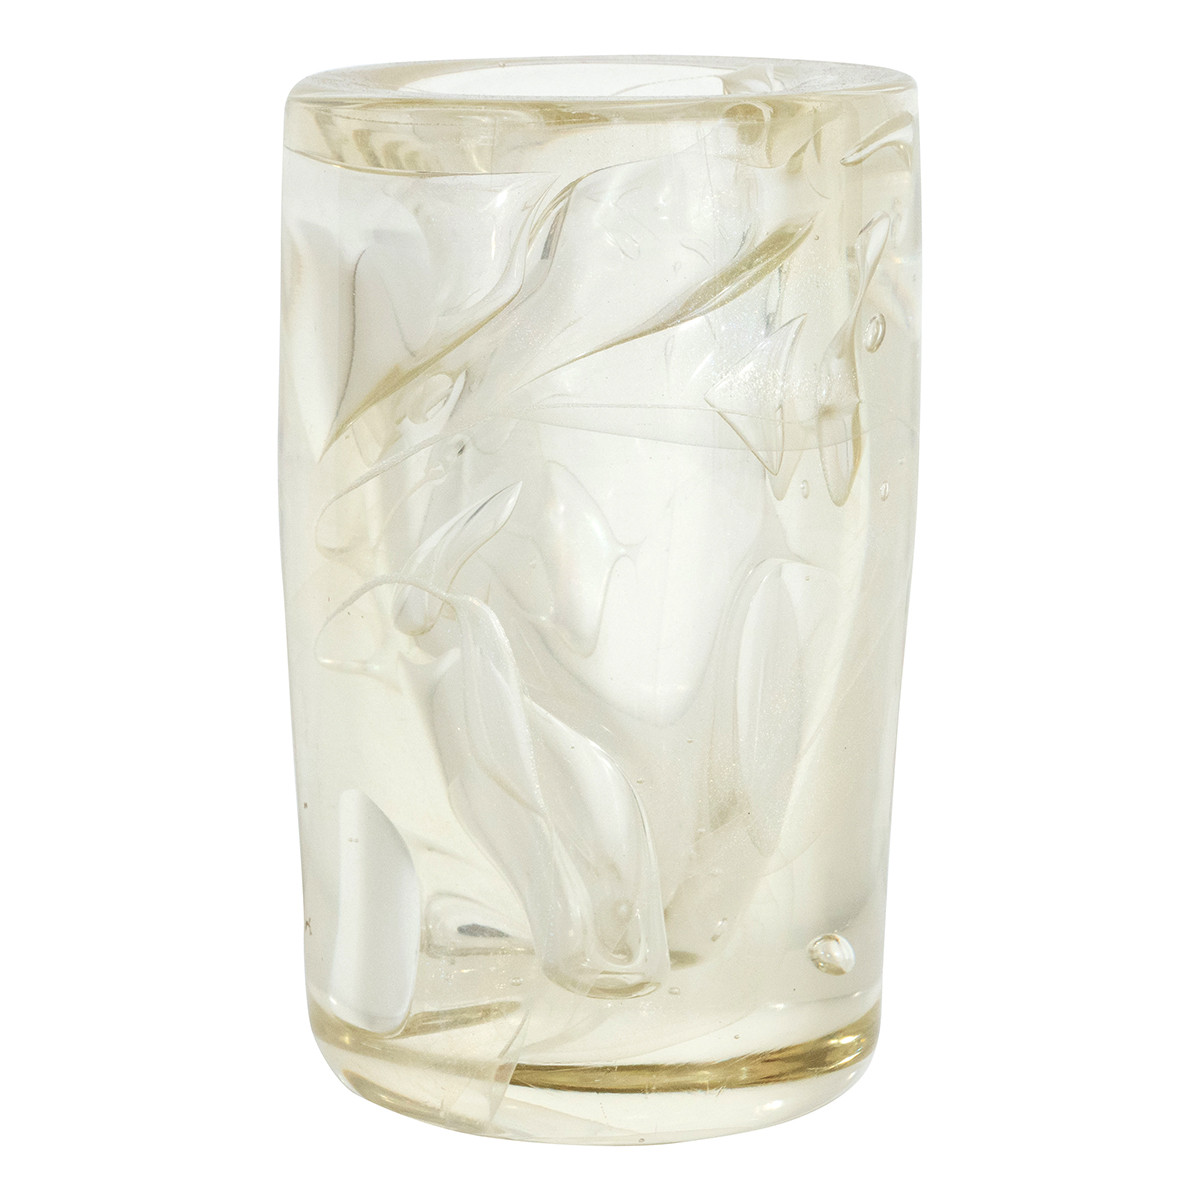 Gold-flecked art glass vase